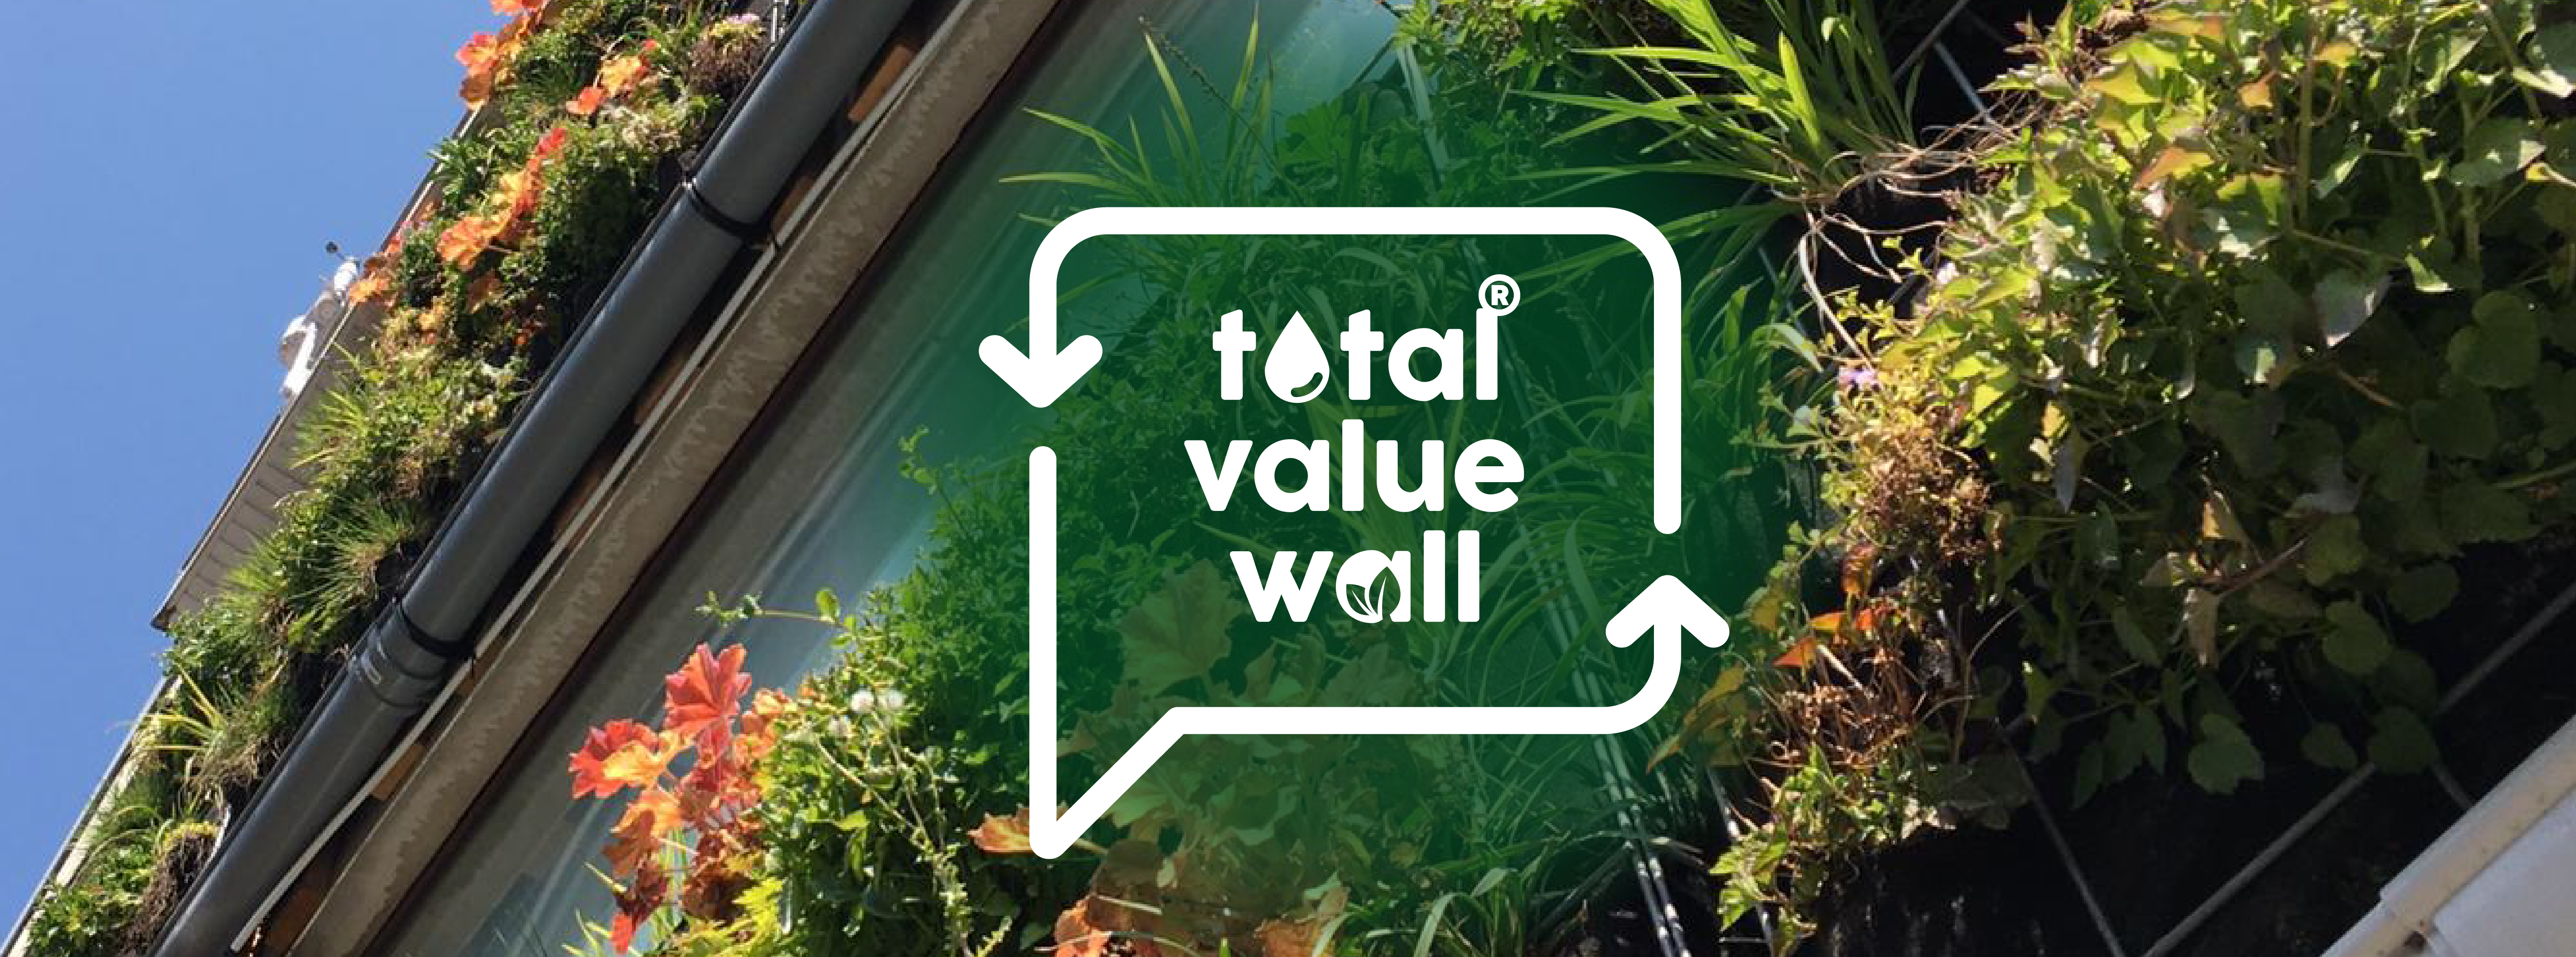 TotalValueWall banner logo